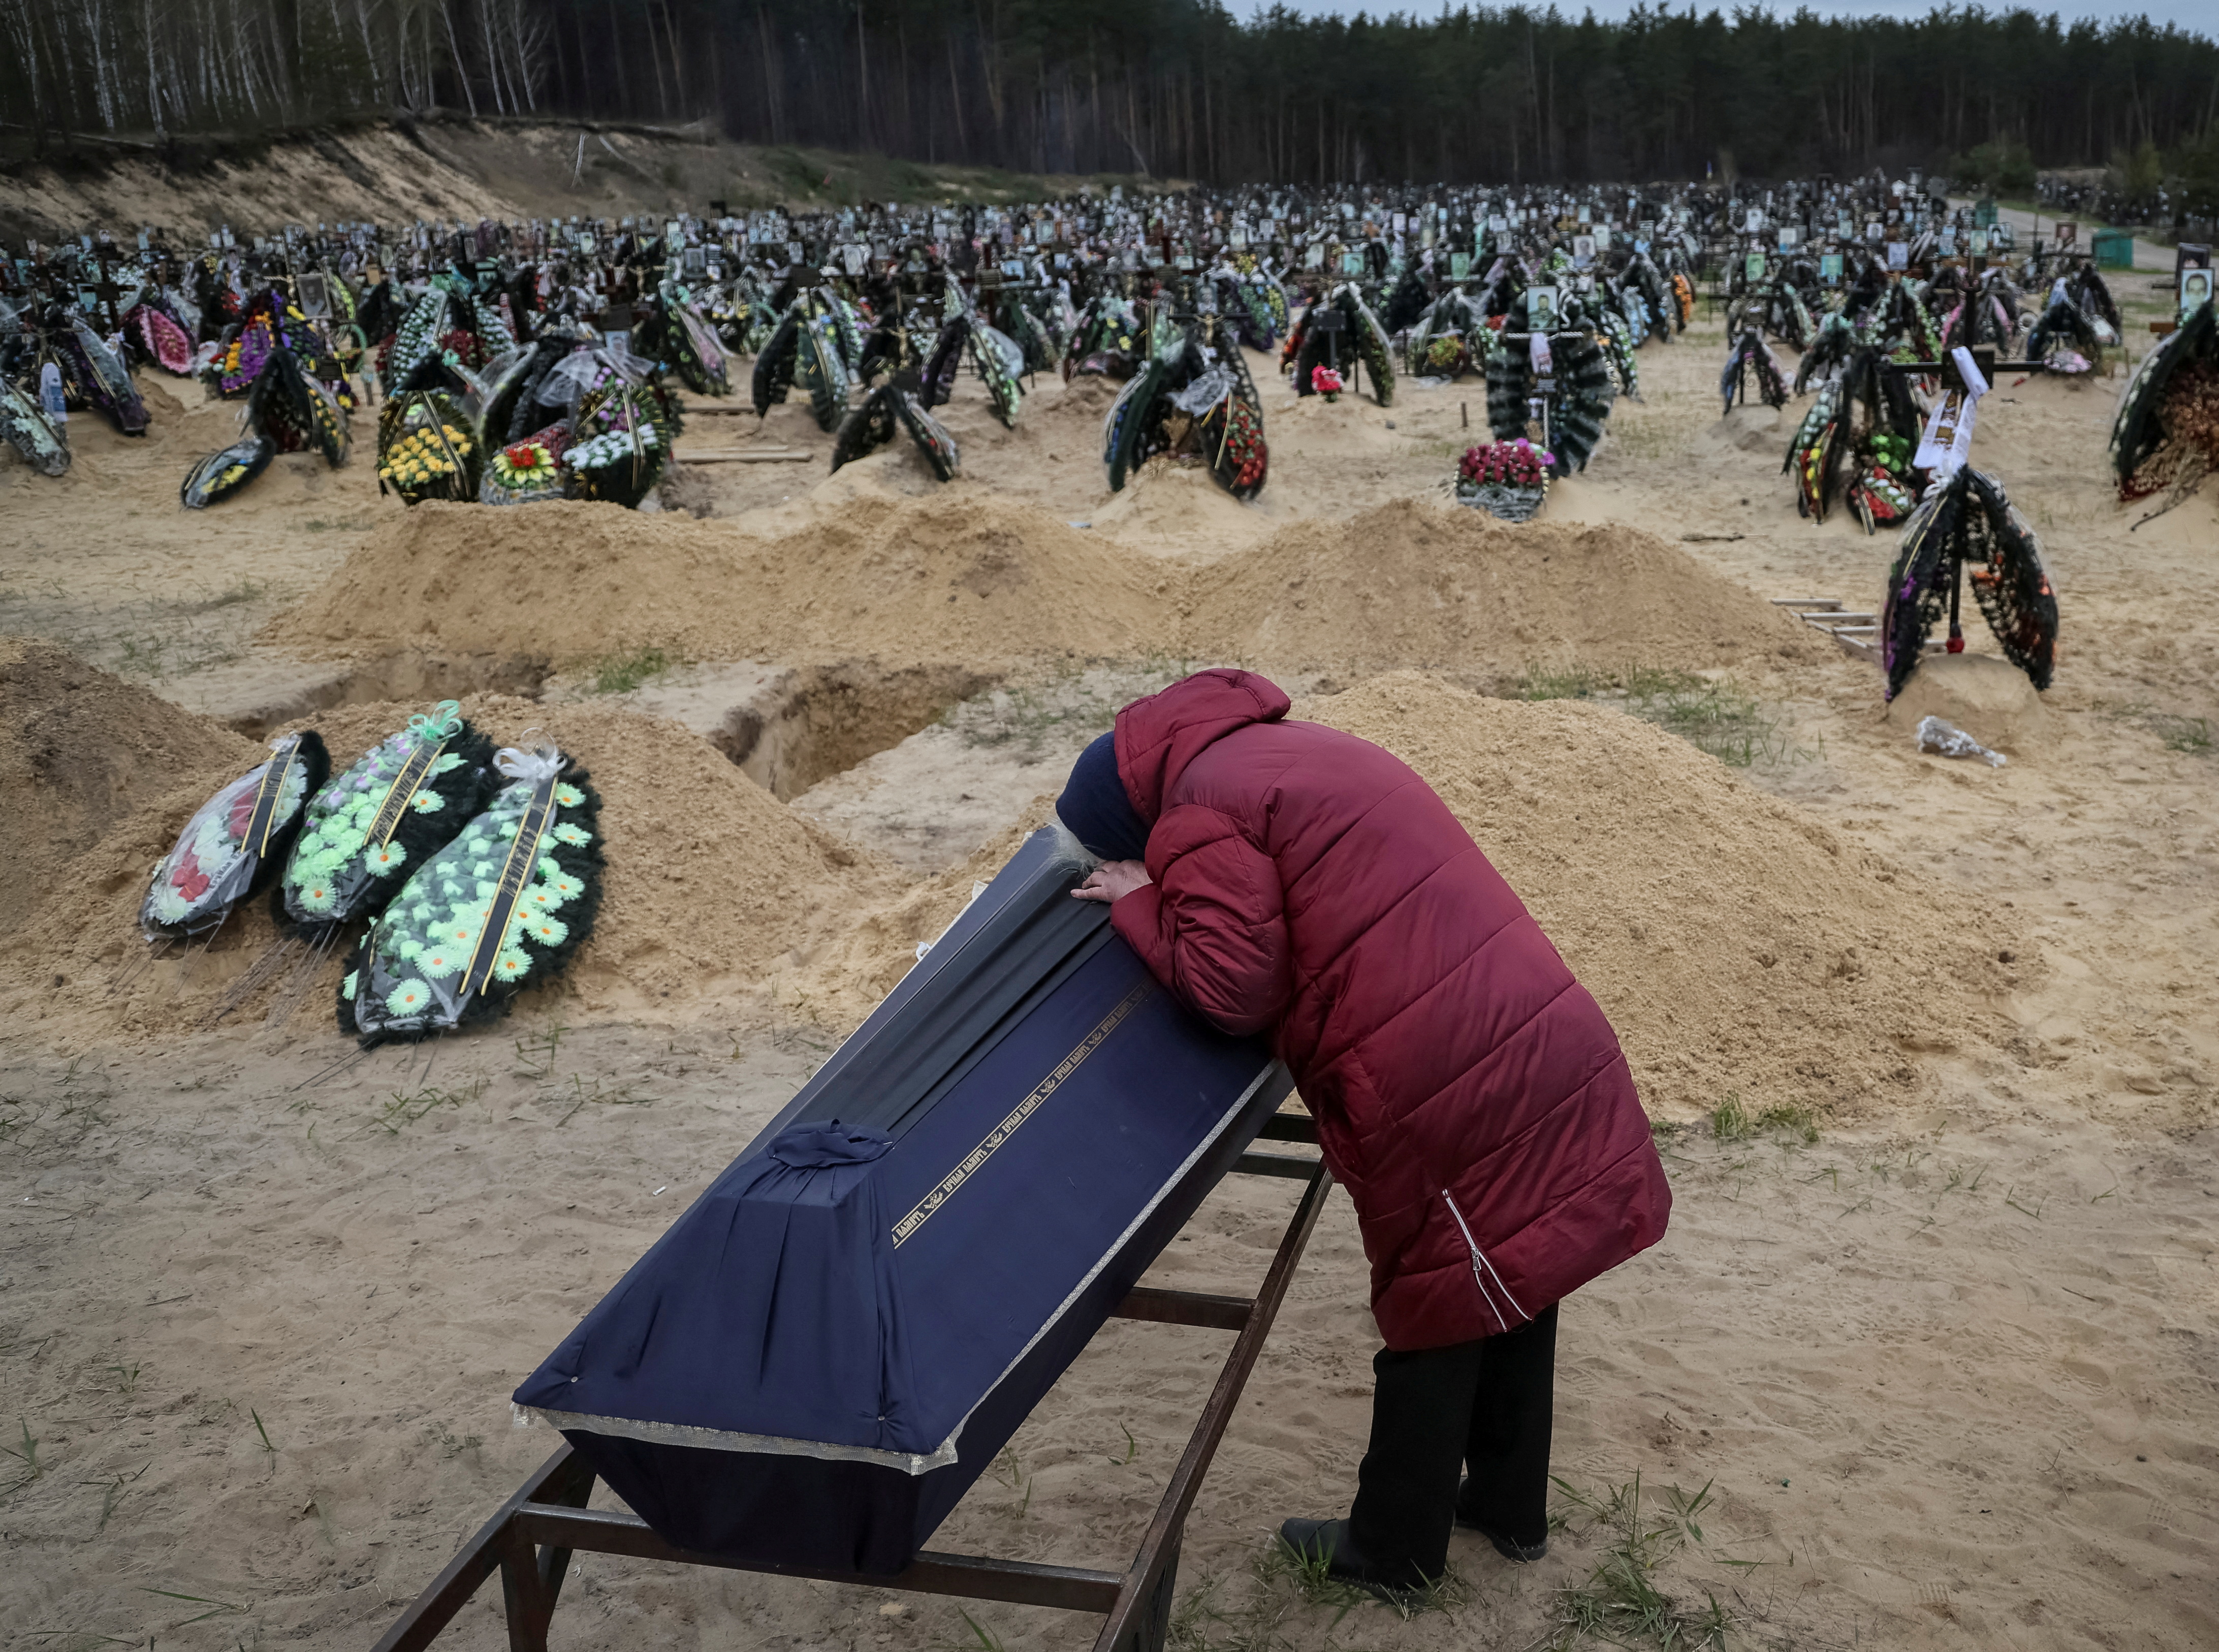 Una mujer reacciona durante el funeral de su pariente, que murió durante el bombardeo de las tropas rusas, en medio de la invasión rusa de Ucrania, en el cementerio de Irpin, región de Kiev, Ucrania (REUTERS/Gleb Garanich)